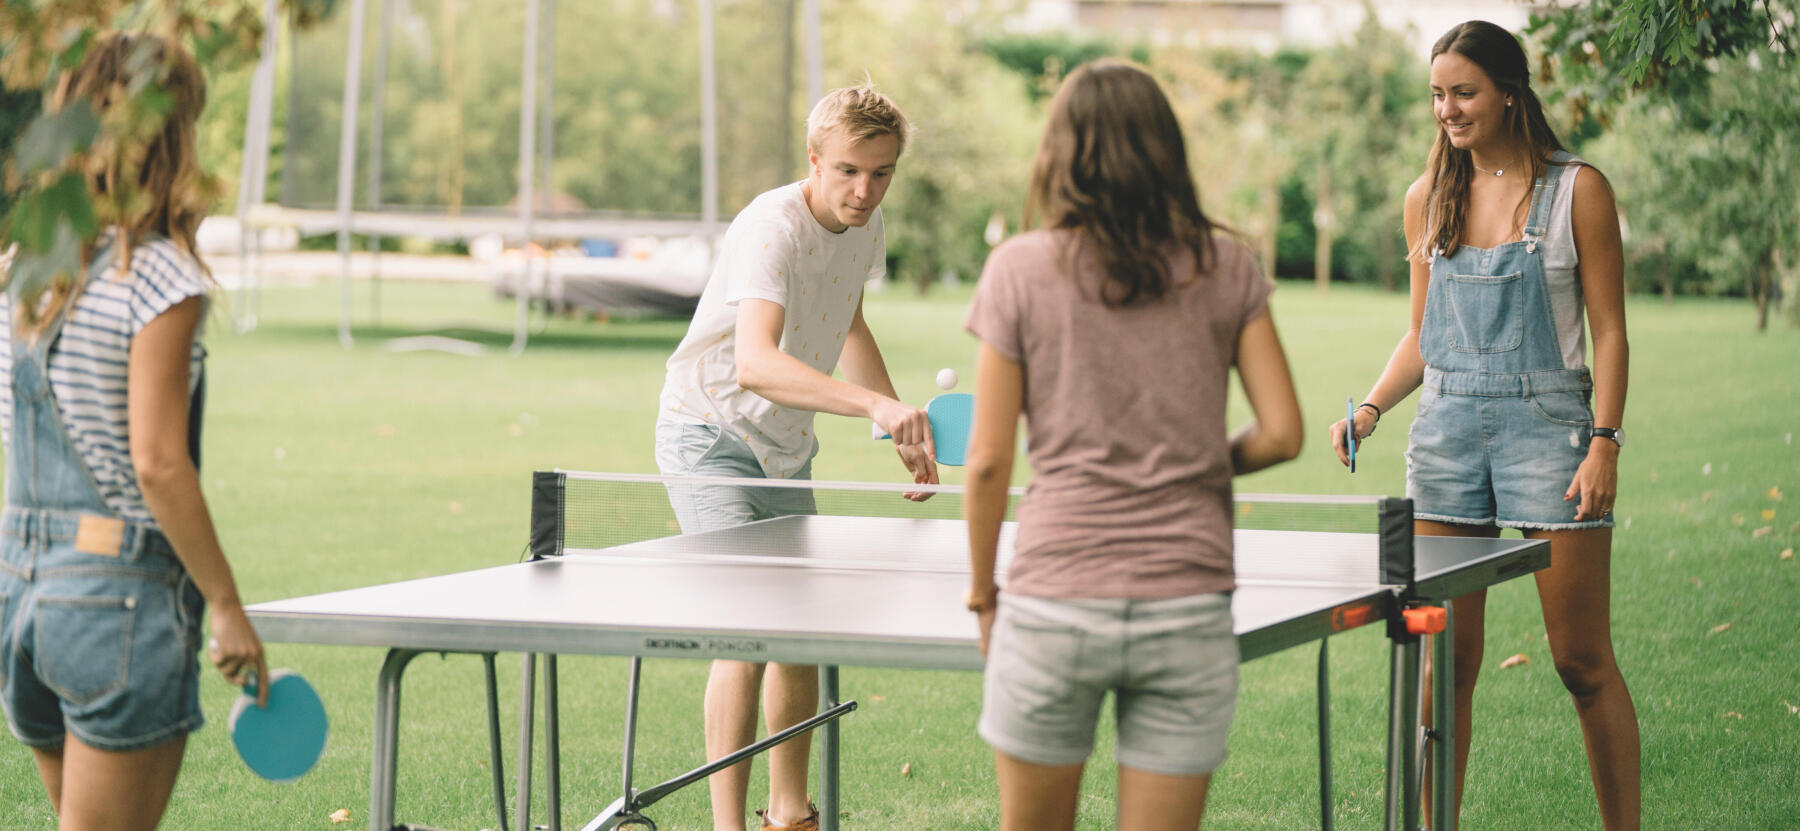 Comment choisir une table de ping pong ? 